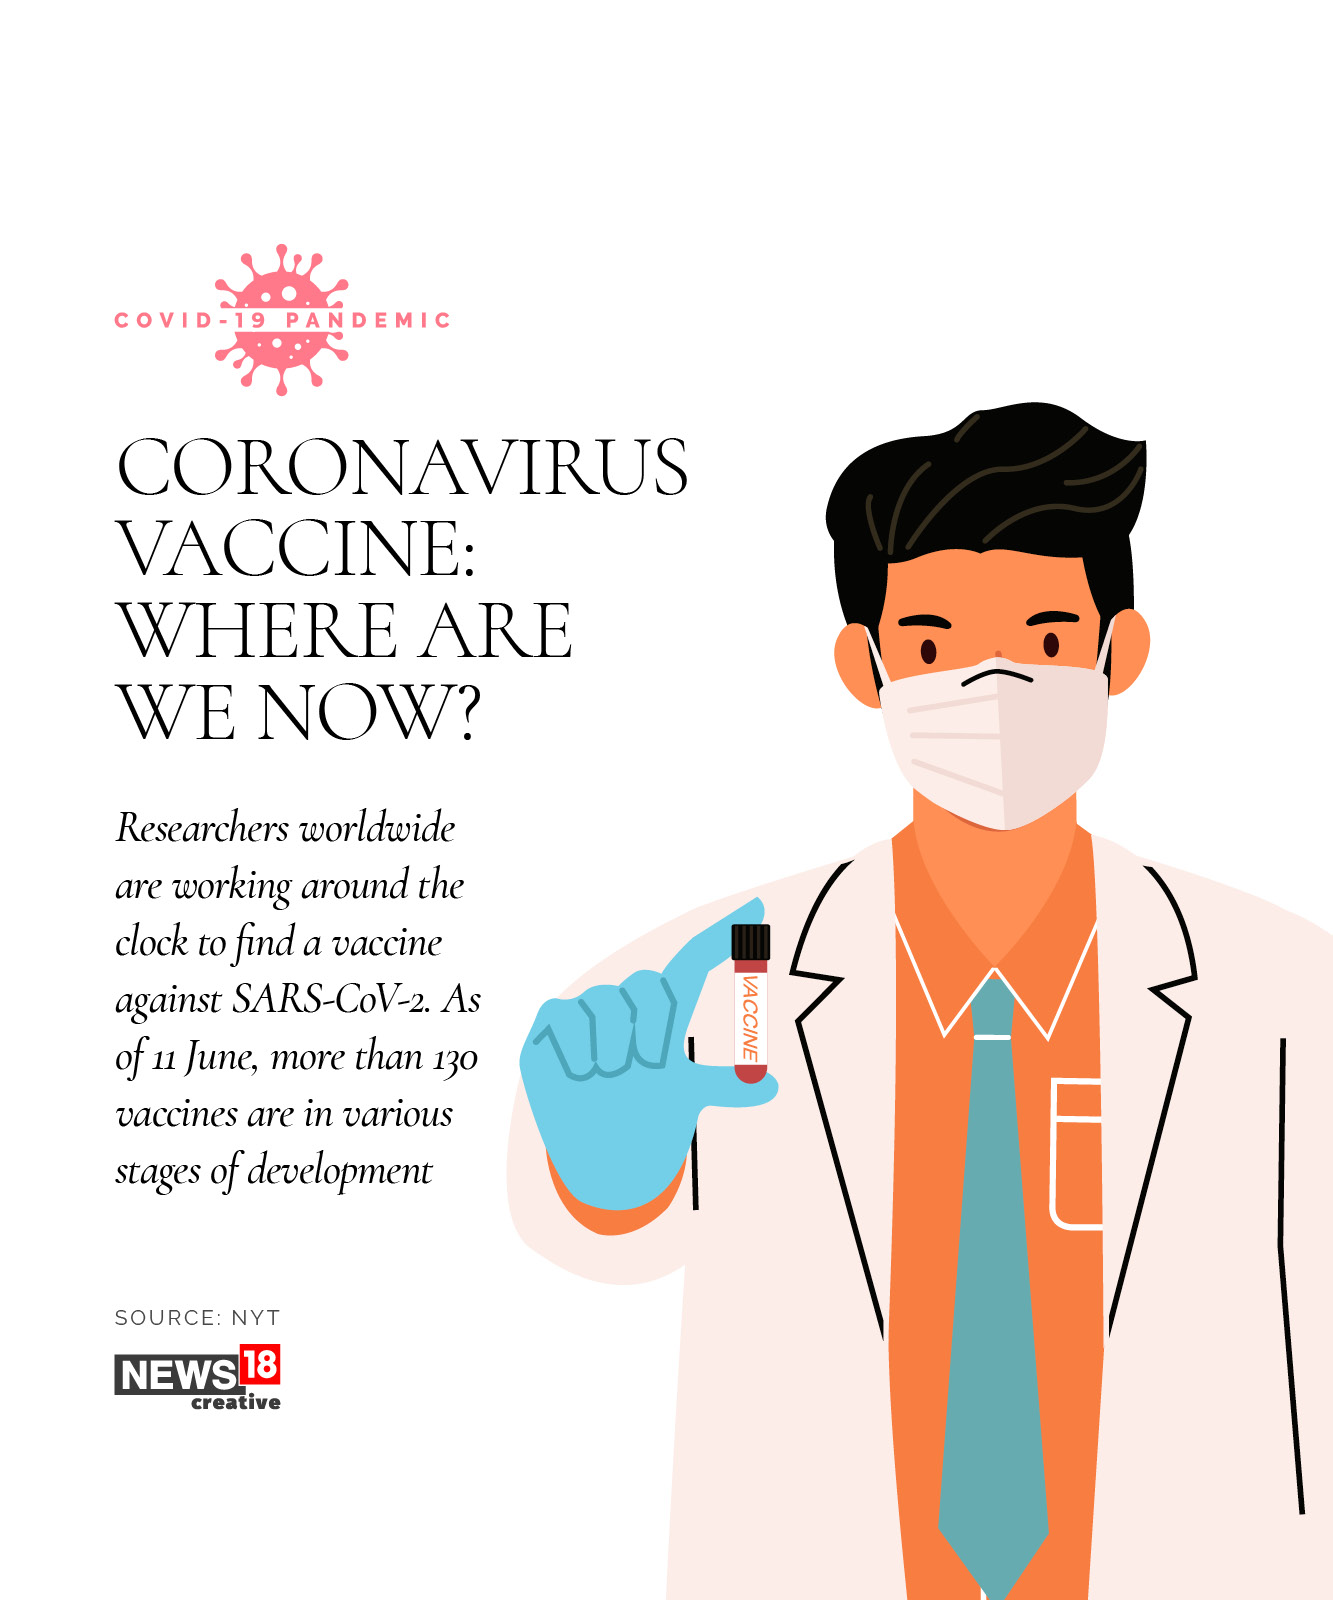 Coronavirus vaccine: Where are we now?